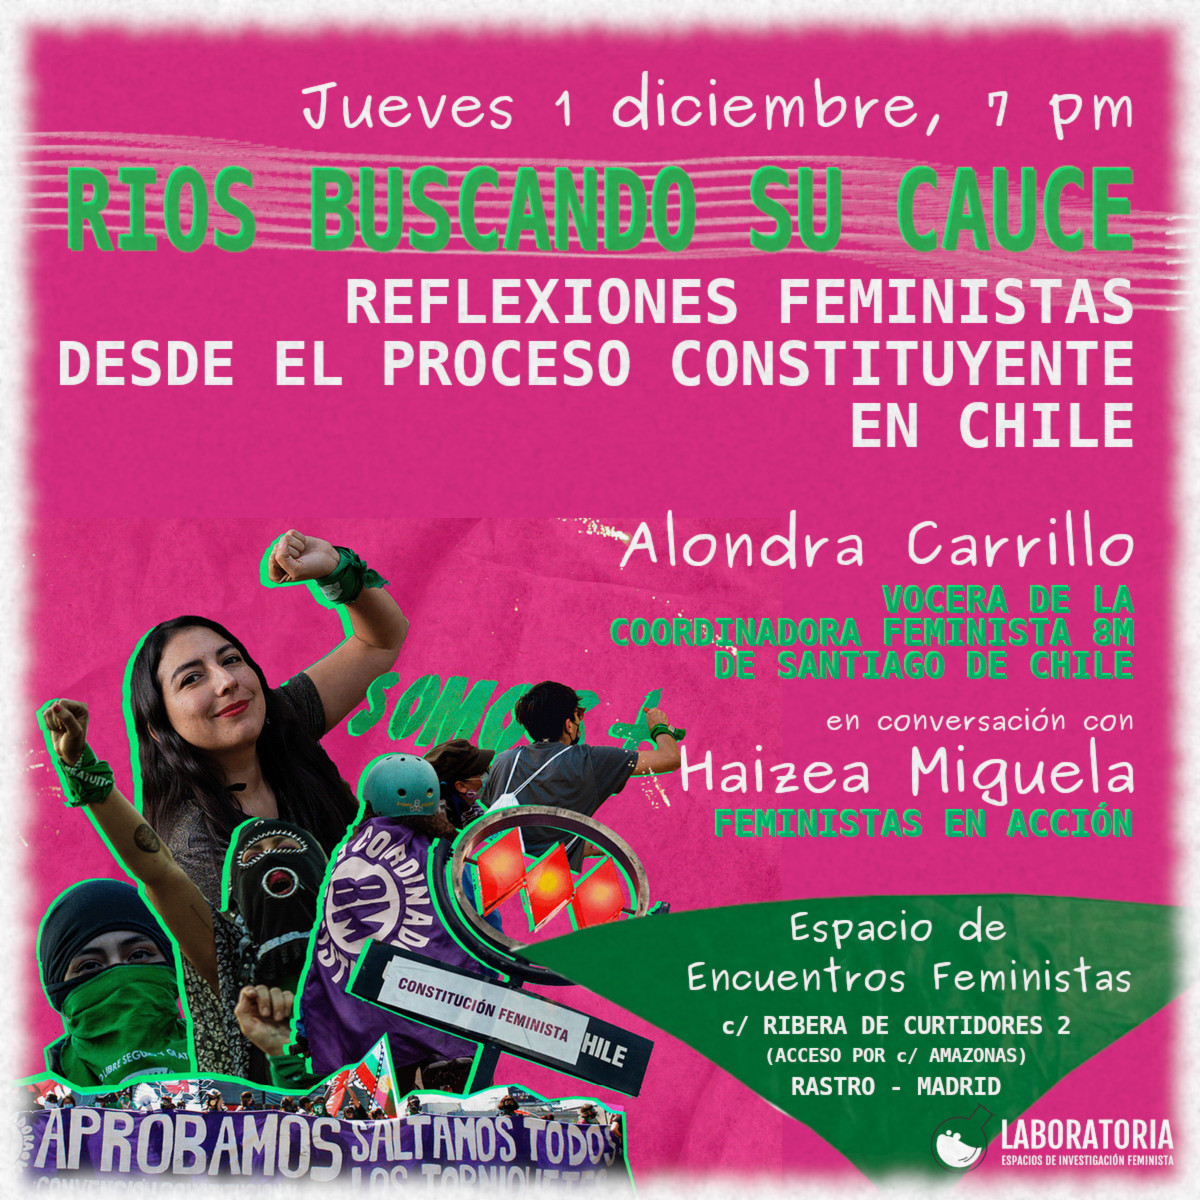 Rios buscando su cauce. Reflexiones feministas desde el proceso constituyente chileno. 1/12/22. Espacio de encuentros feministas